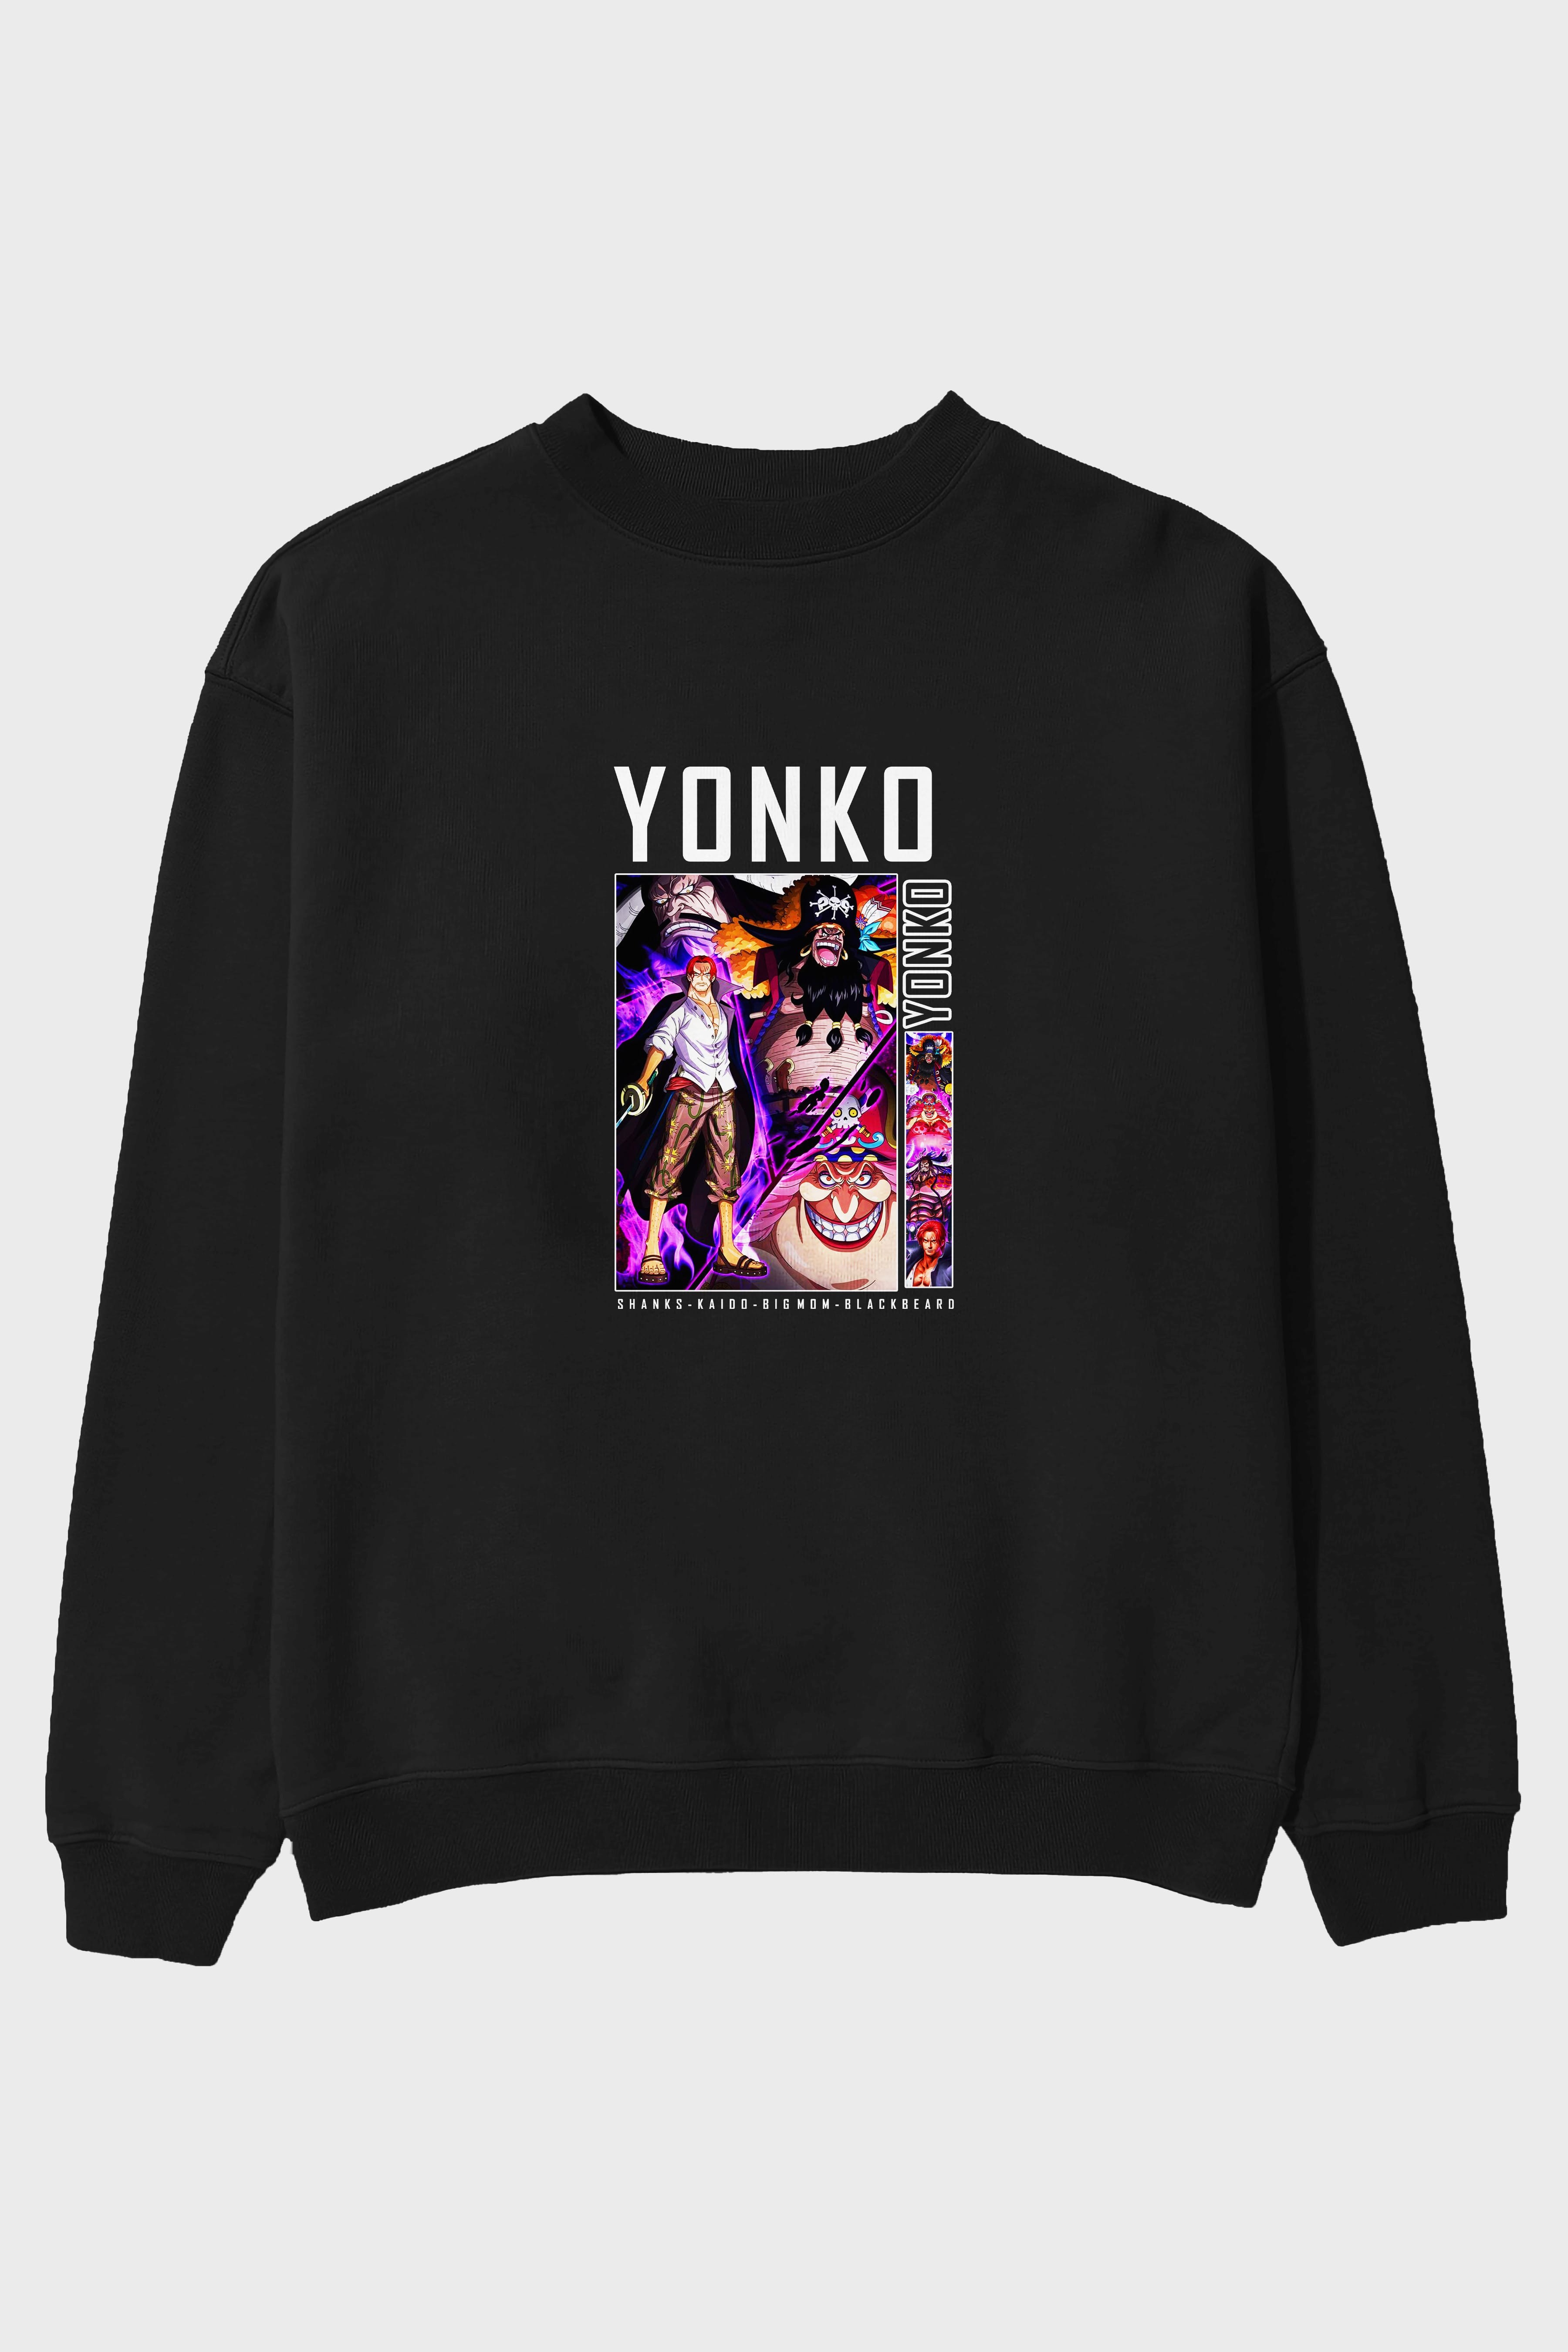 Yonko Ön Baskılı Anime Oversize Sweatshirt Erkek Kadın Unisex